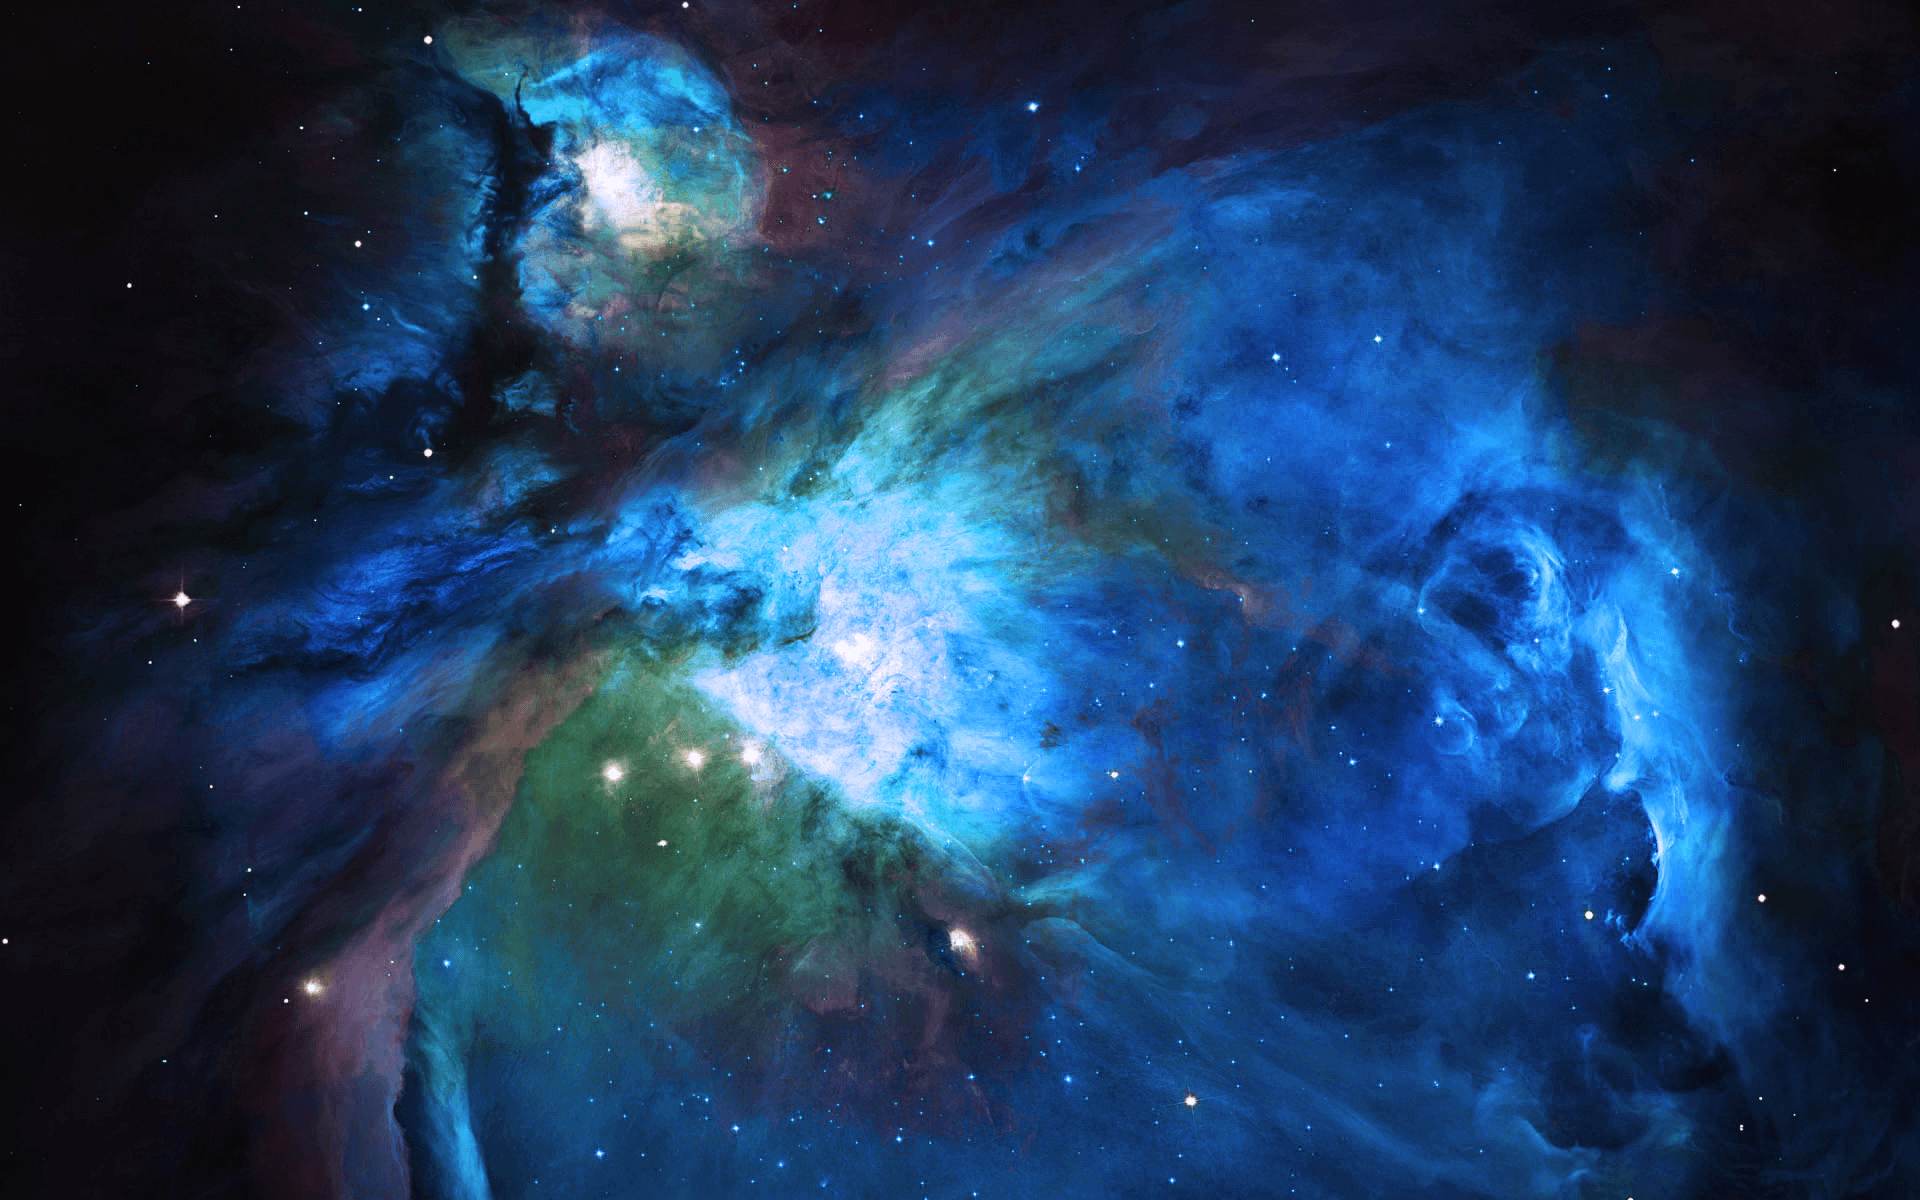 Orion Nebula Best Wallpaper Free q1020wa 1920x1200 px 2.21 MB